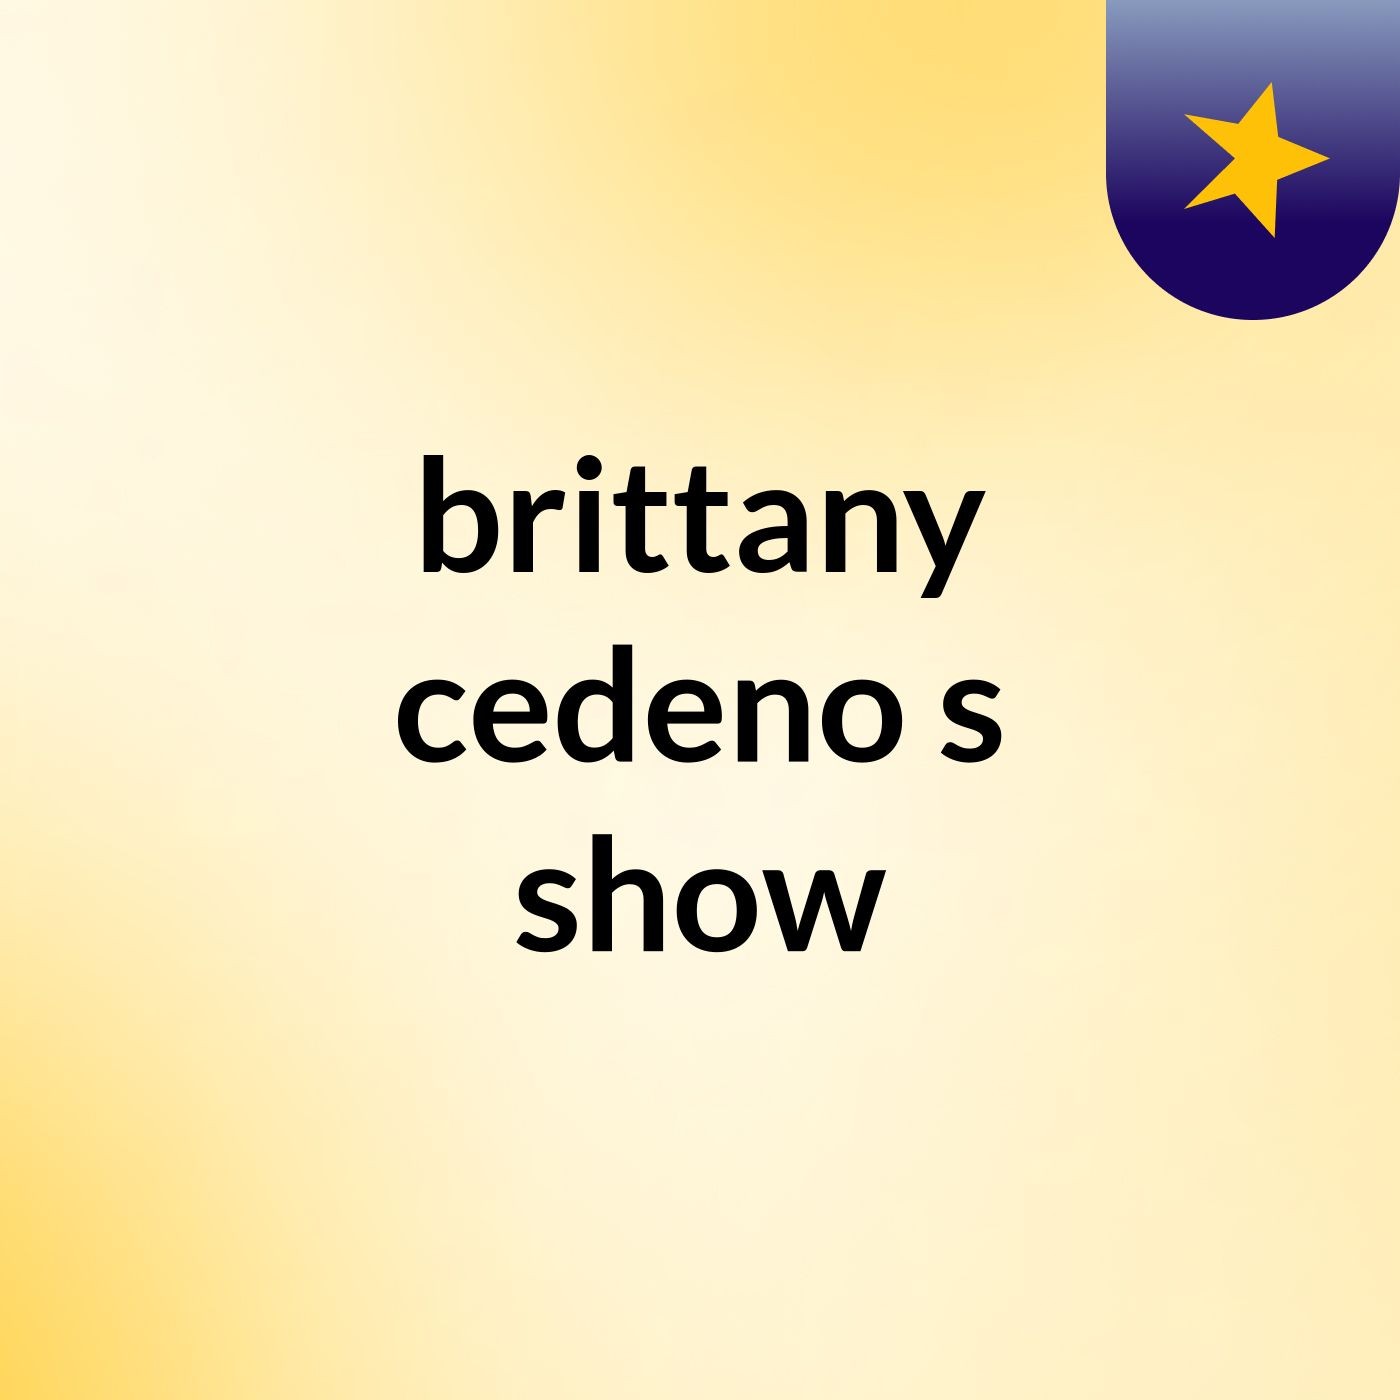 brittany cedeno's show